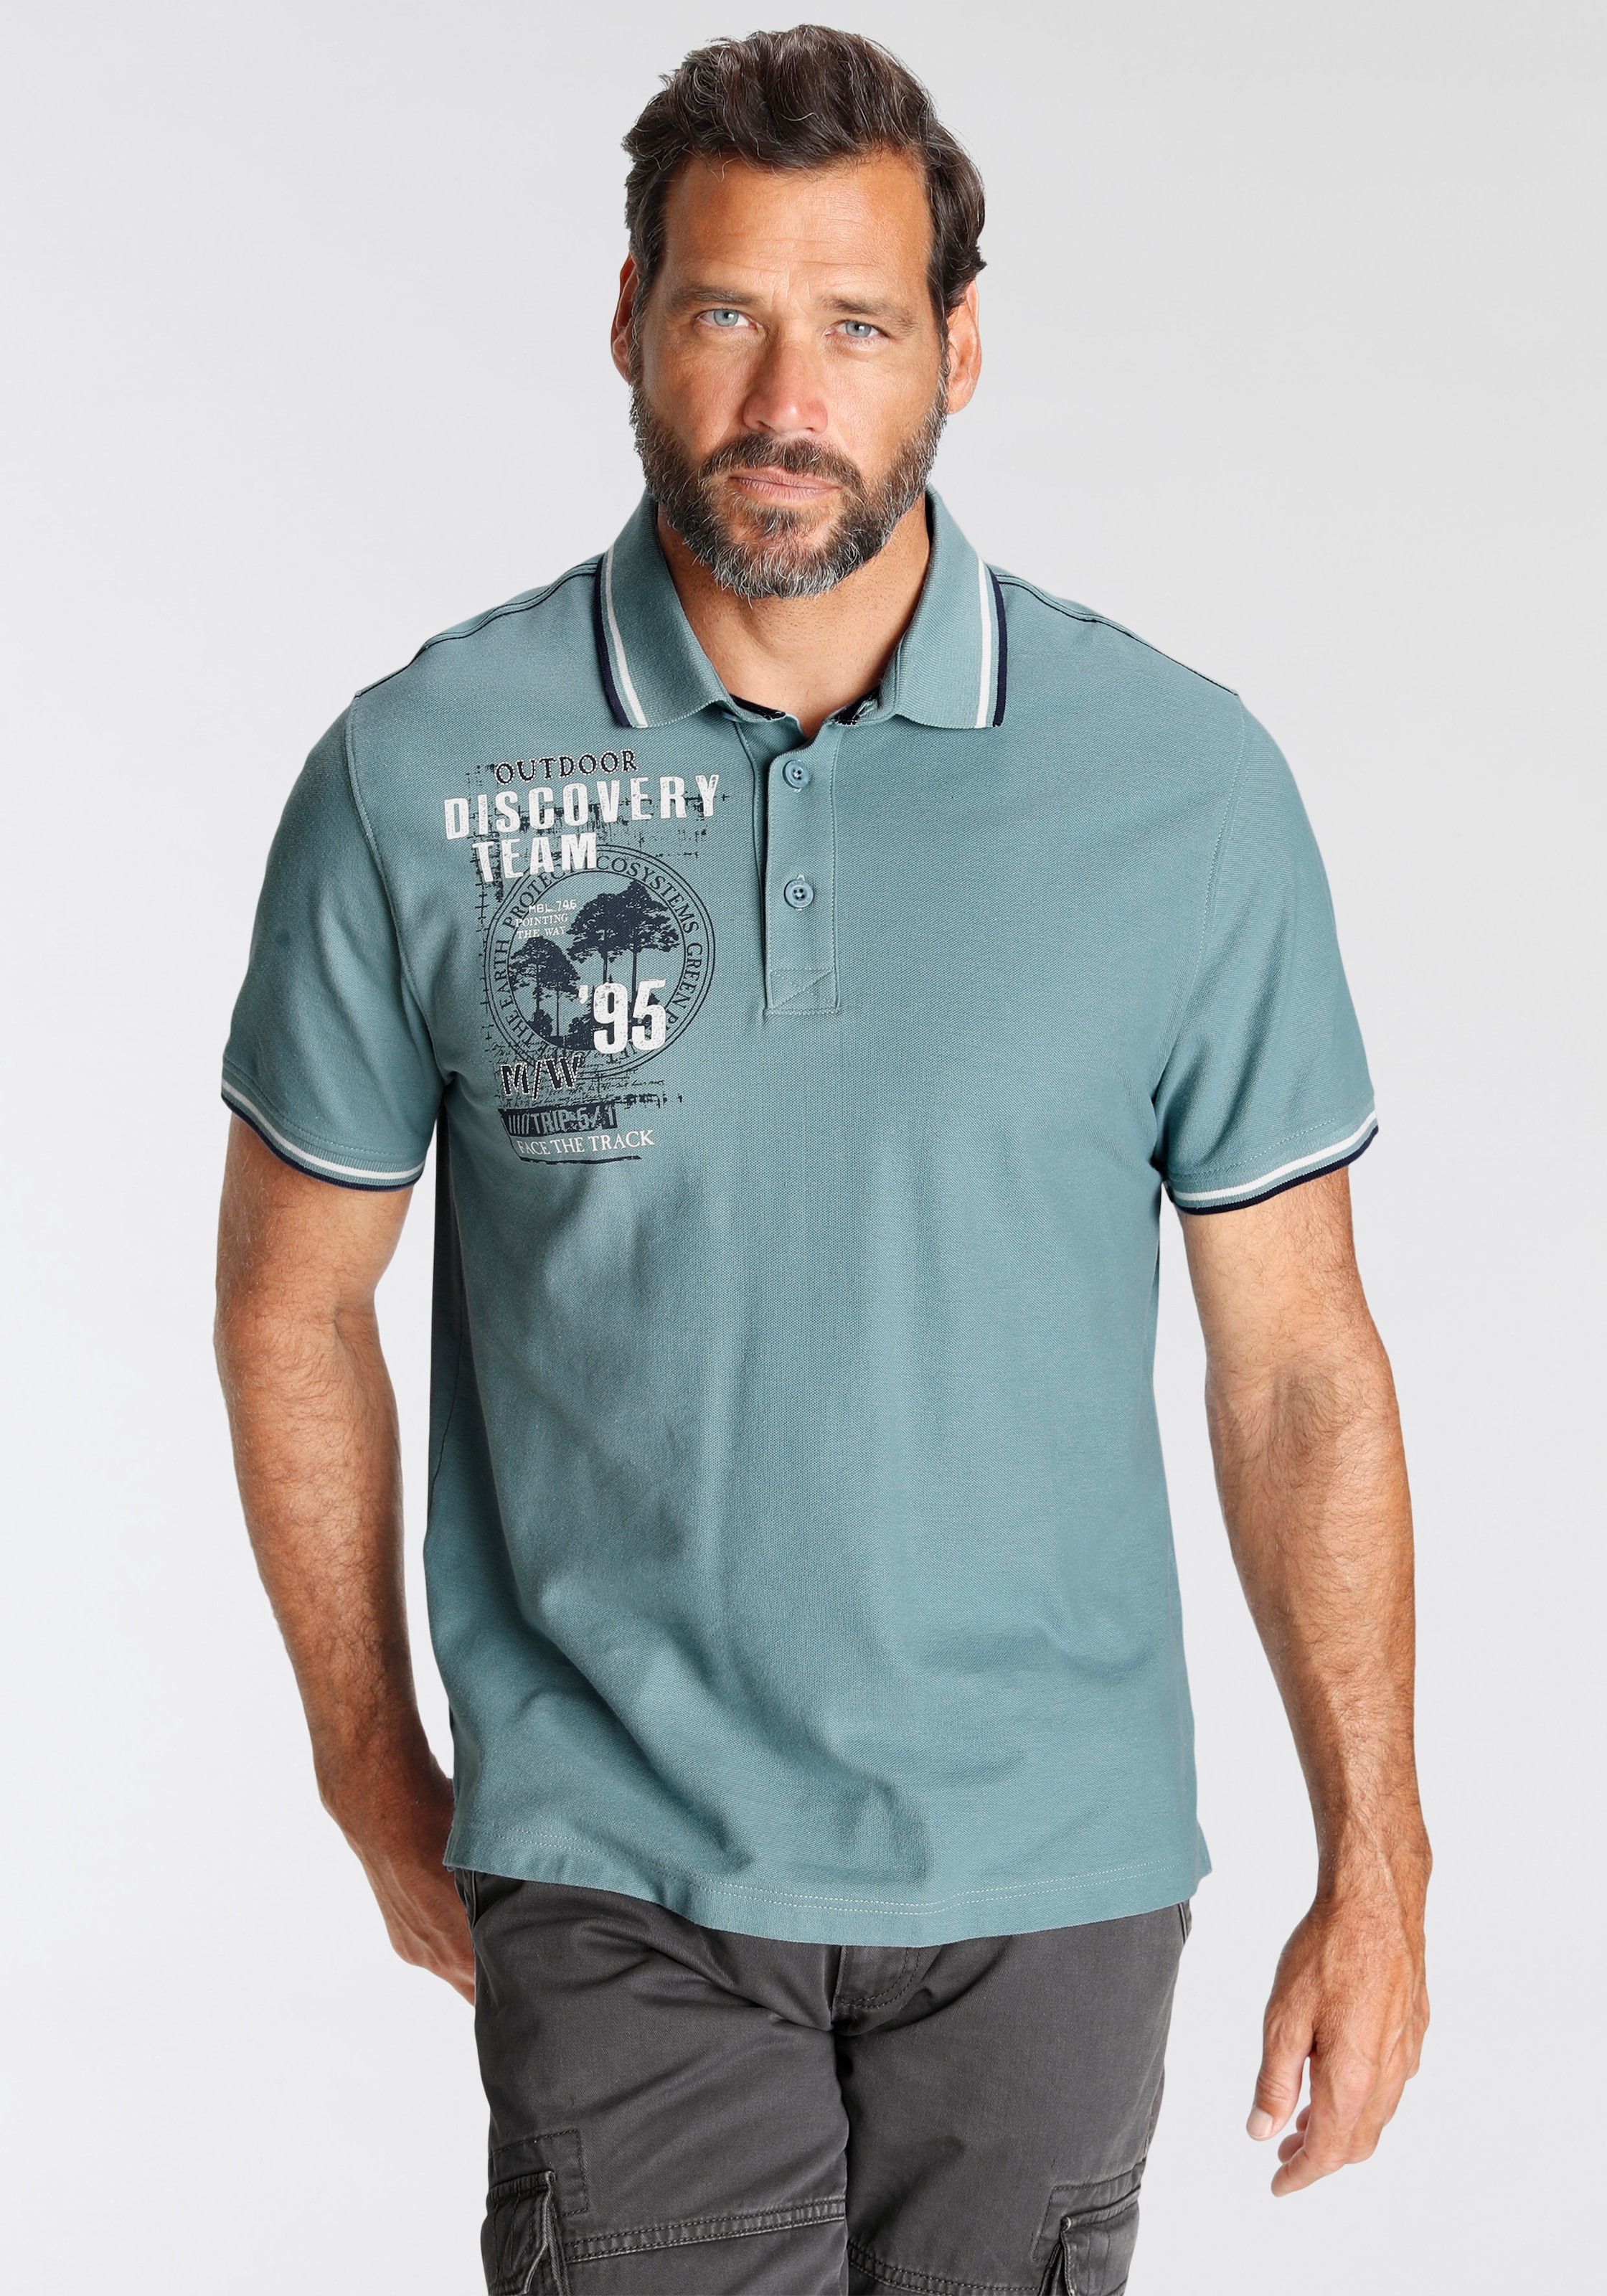 Man's World Poloshirt, Mit Print an der Schulter